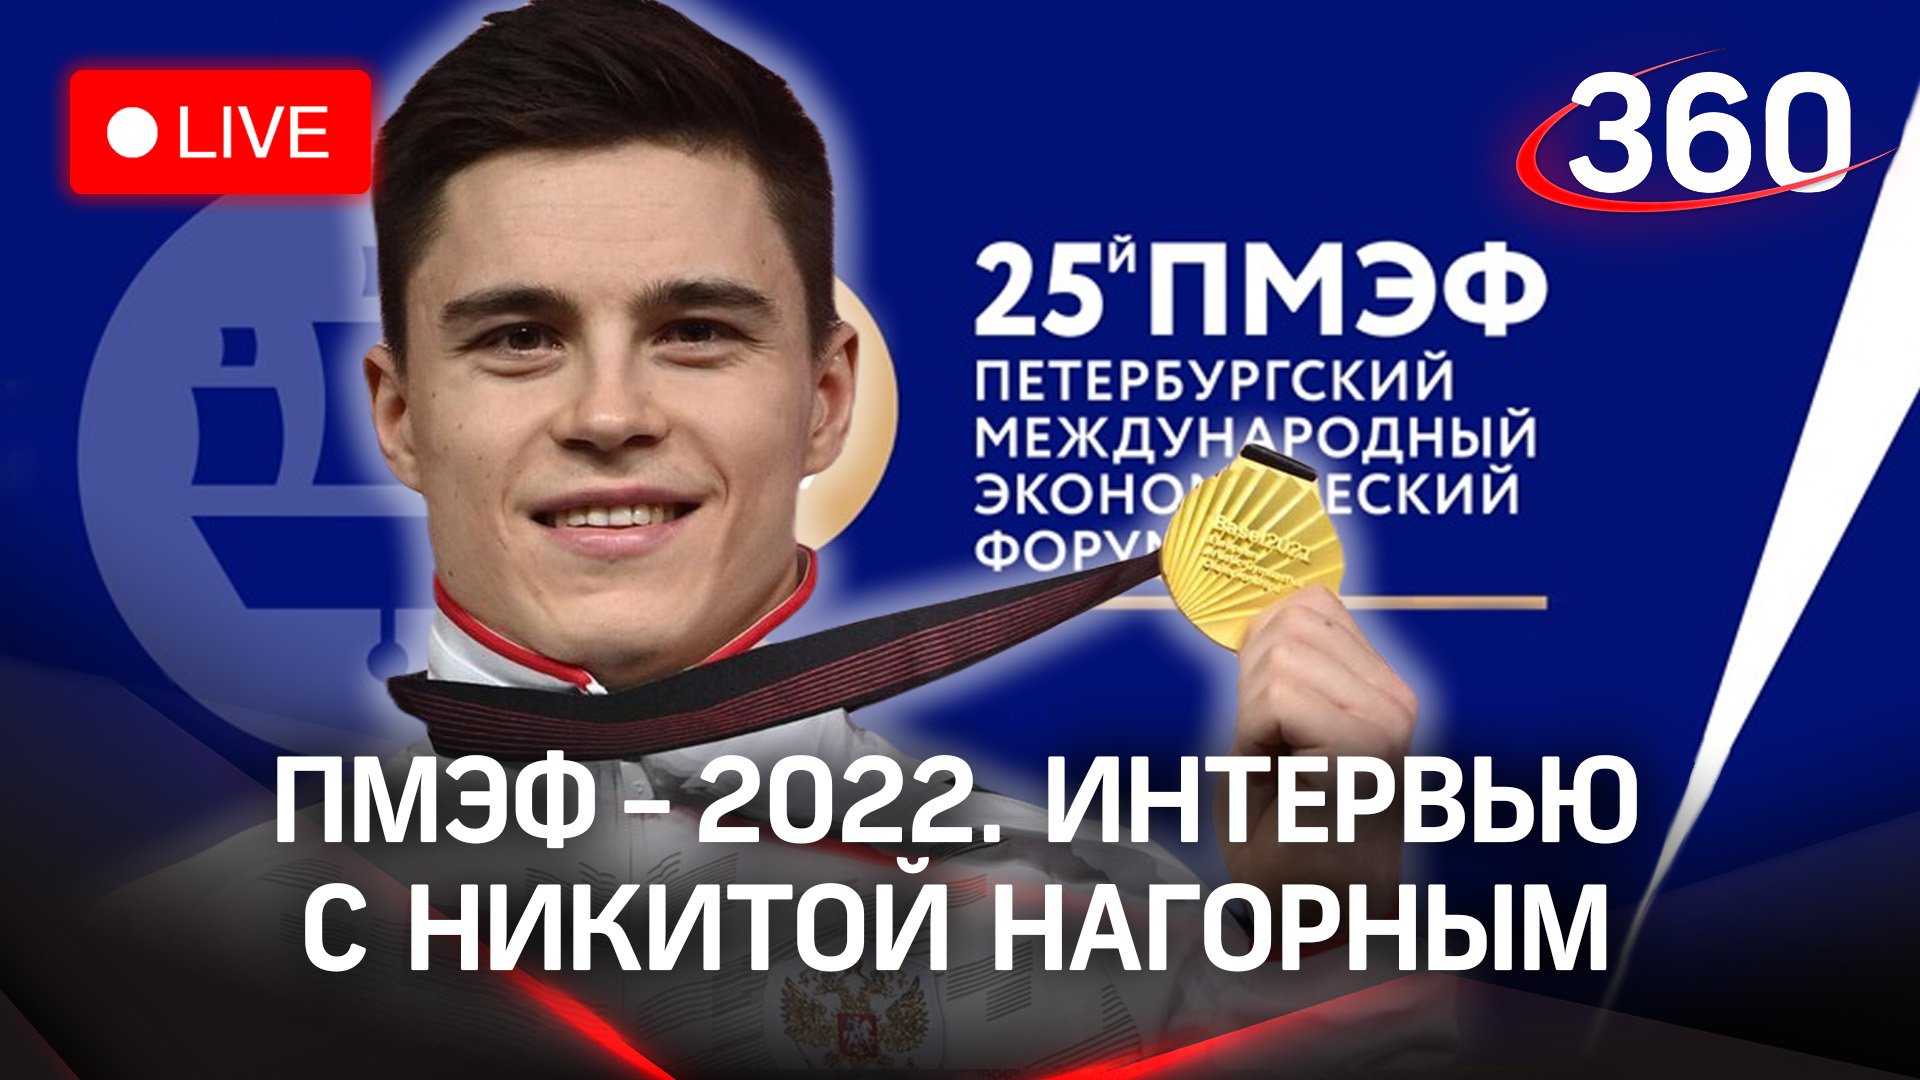 ПМЭФ-2022: интервью с Никитой Нагорным, российским гимнастом и Олимпийским чемпионом